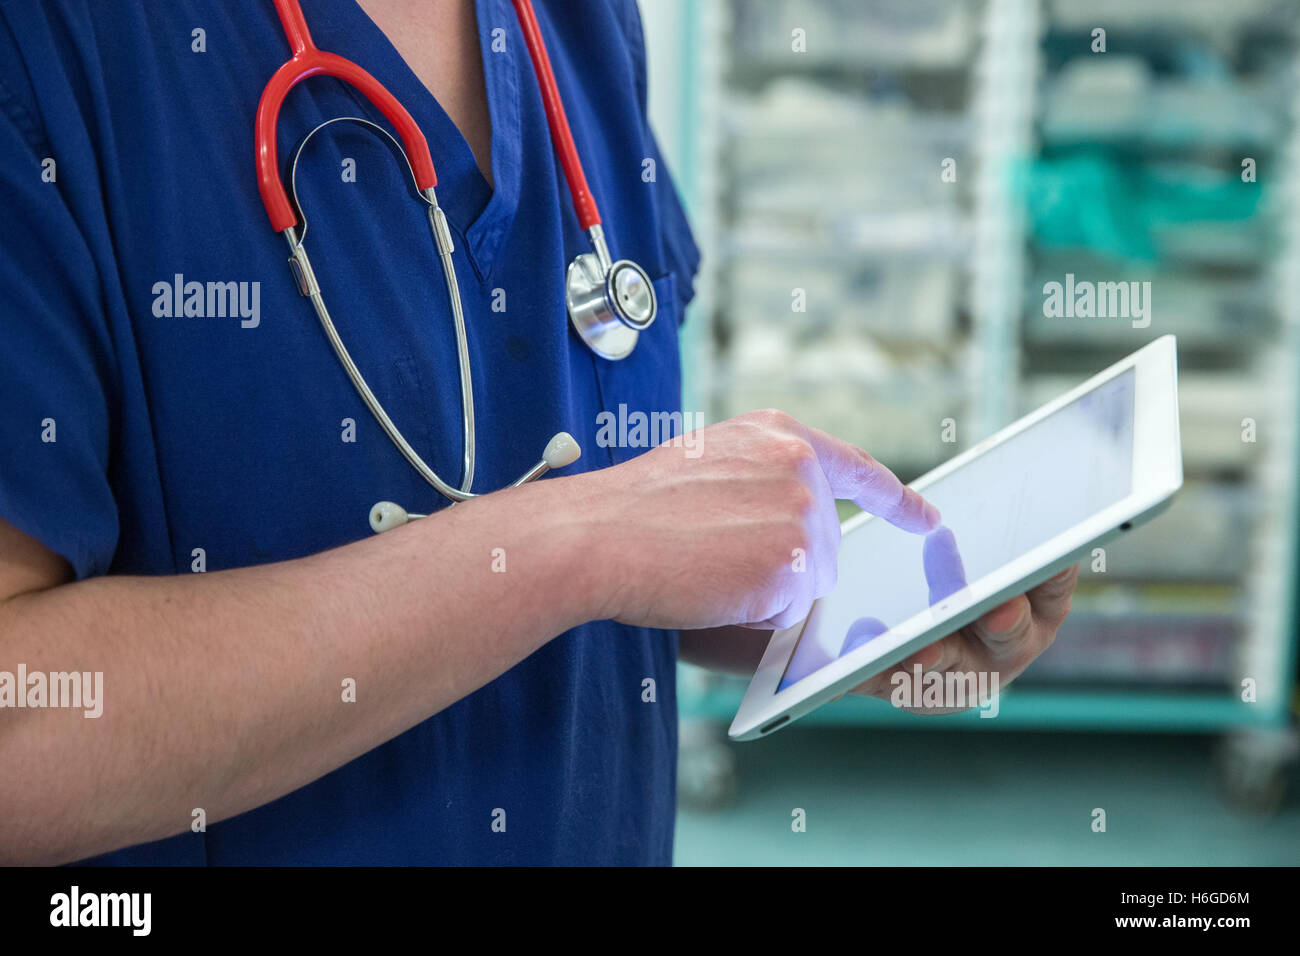 Ein Arzt auf einer Station überprüft eine Patientencharta Datensätze auf einem Ipad Stockfoto